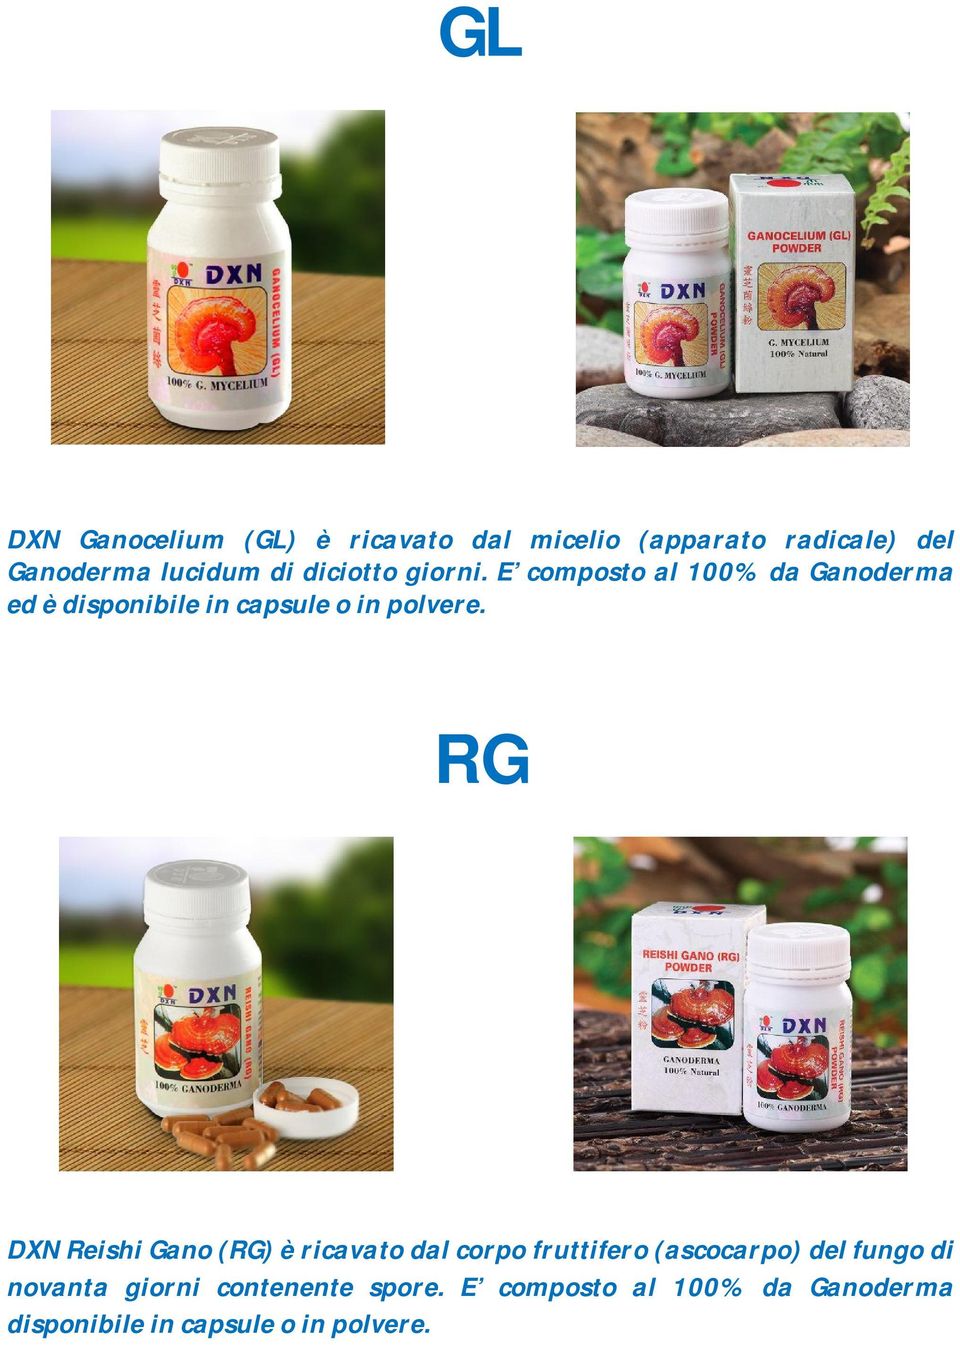 RG DXN Reishi Gano (RG) è ricavato dal corpo fruttifero (ascocarpo) del fungo di novanta